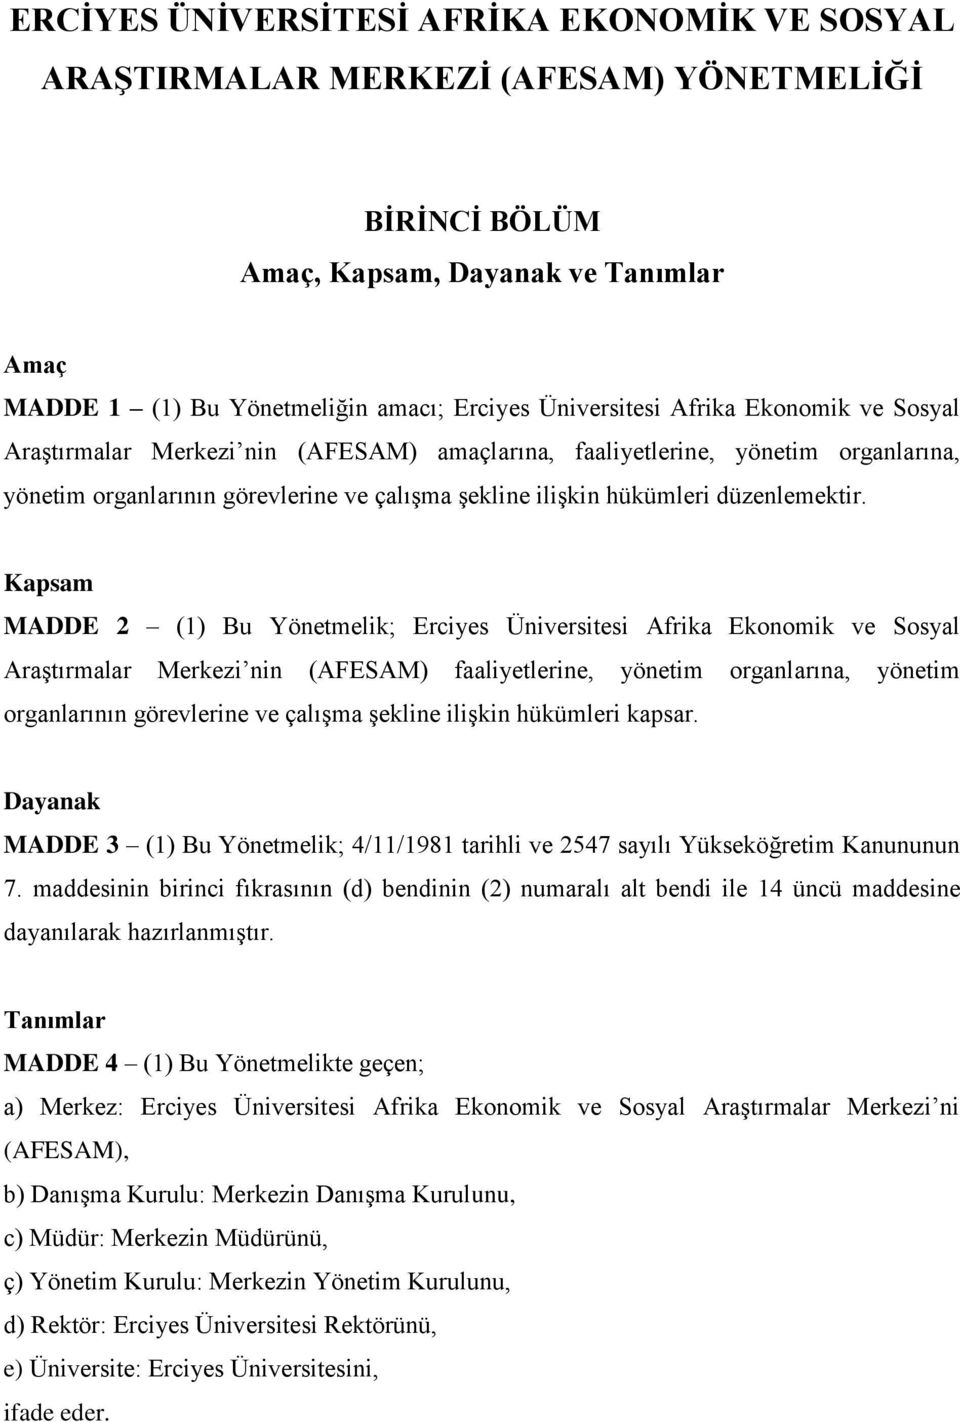 Kapsam MADDE 2 (1) Bu Yönetmelik; Erciyes Üniversitesi Afrika Ekonomik ve Sosyal Araştırmalar Merkezi nin (AFESAM) faaliyetlerine, yönetim organlarına, yönetim organlarının görevlerine ve çalışma